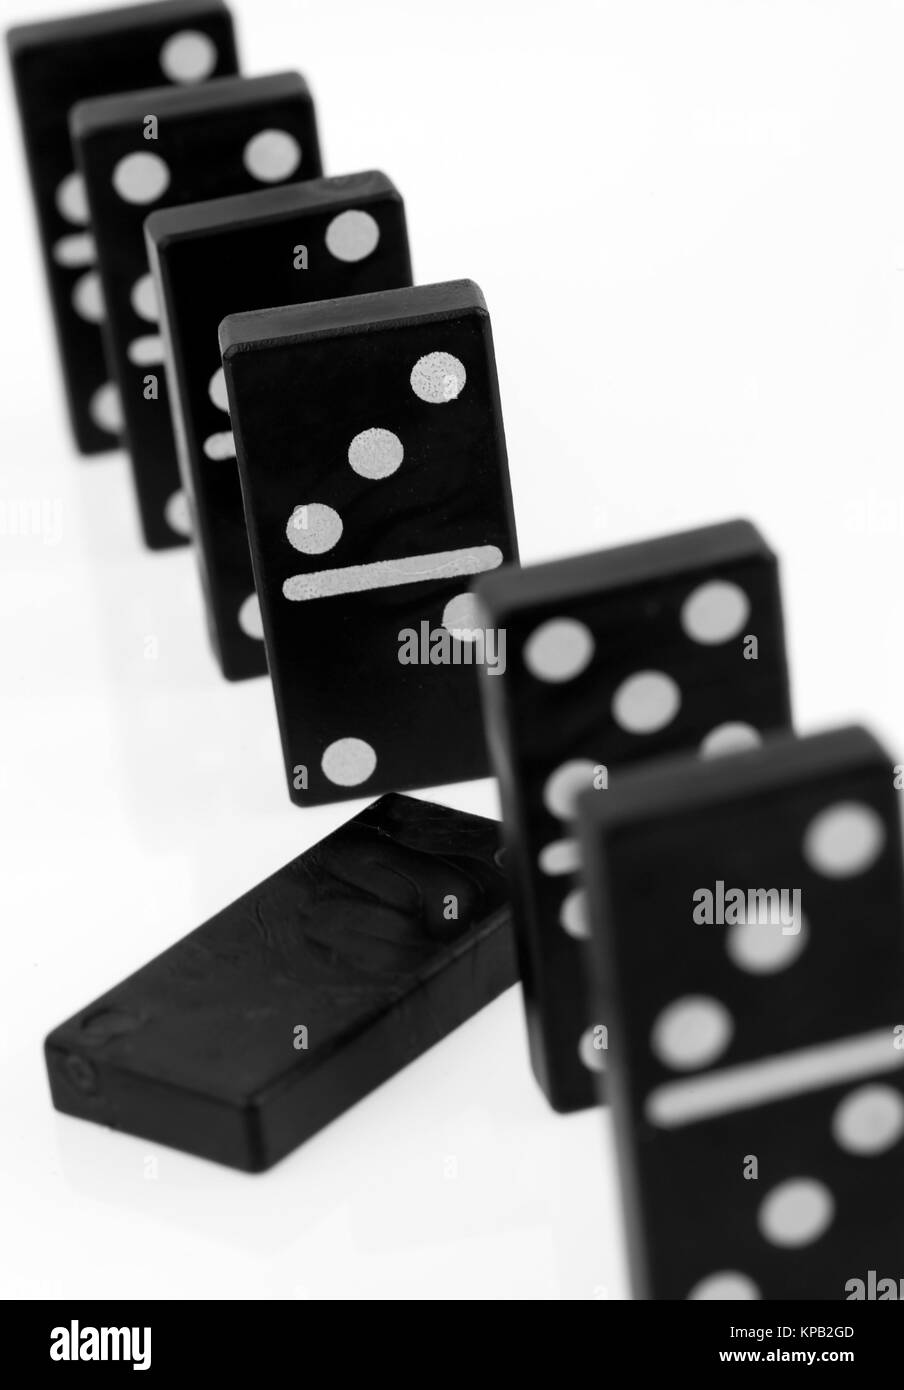 Dominosteine in der Reihe - domino Foto Stock